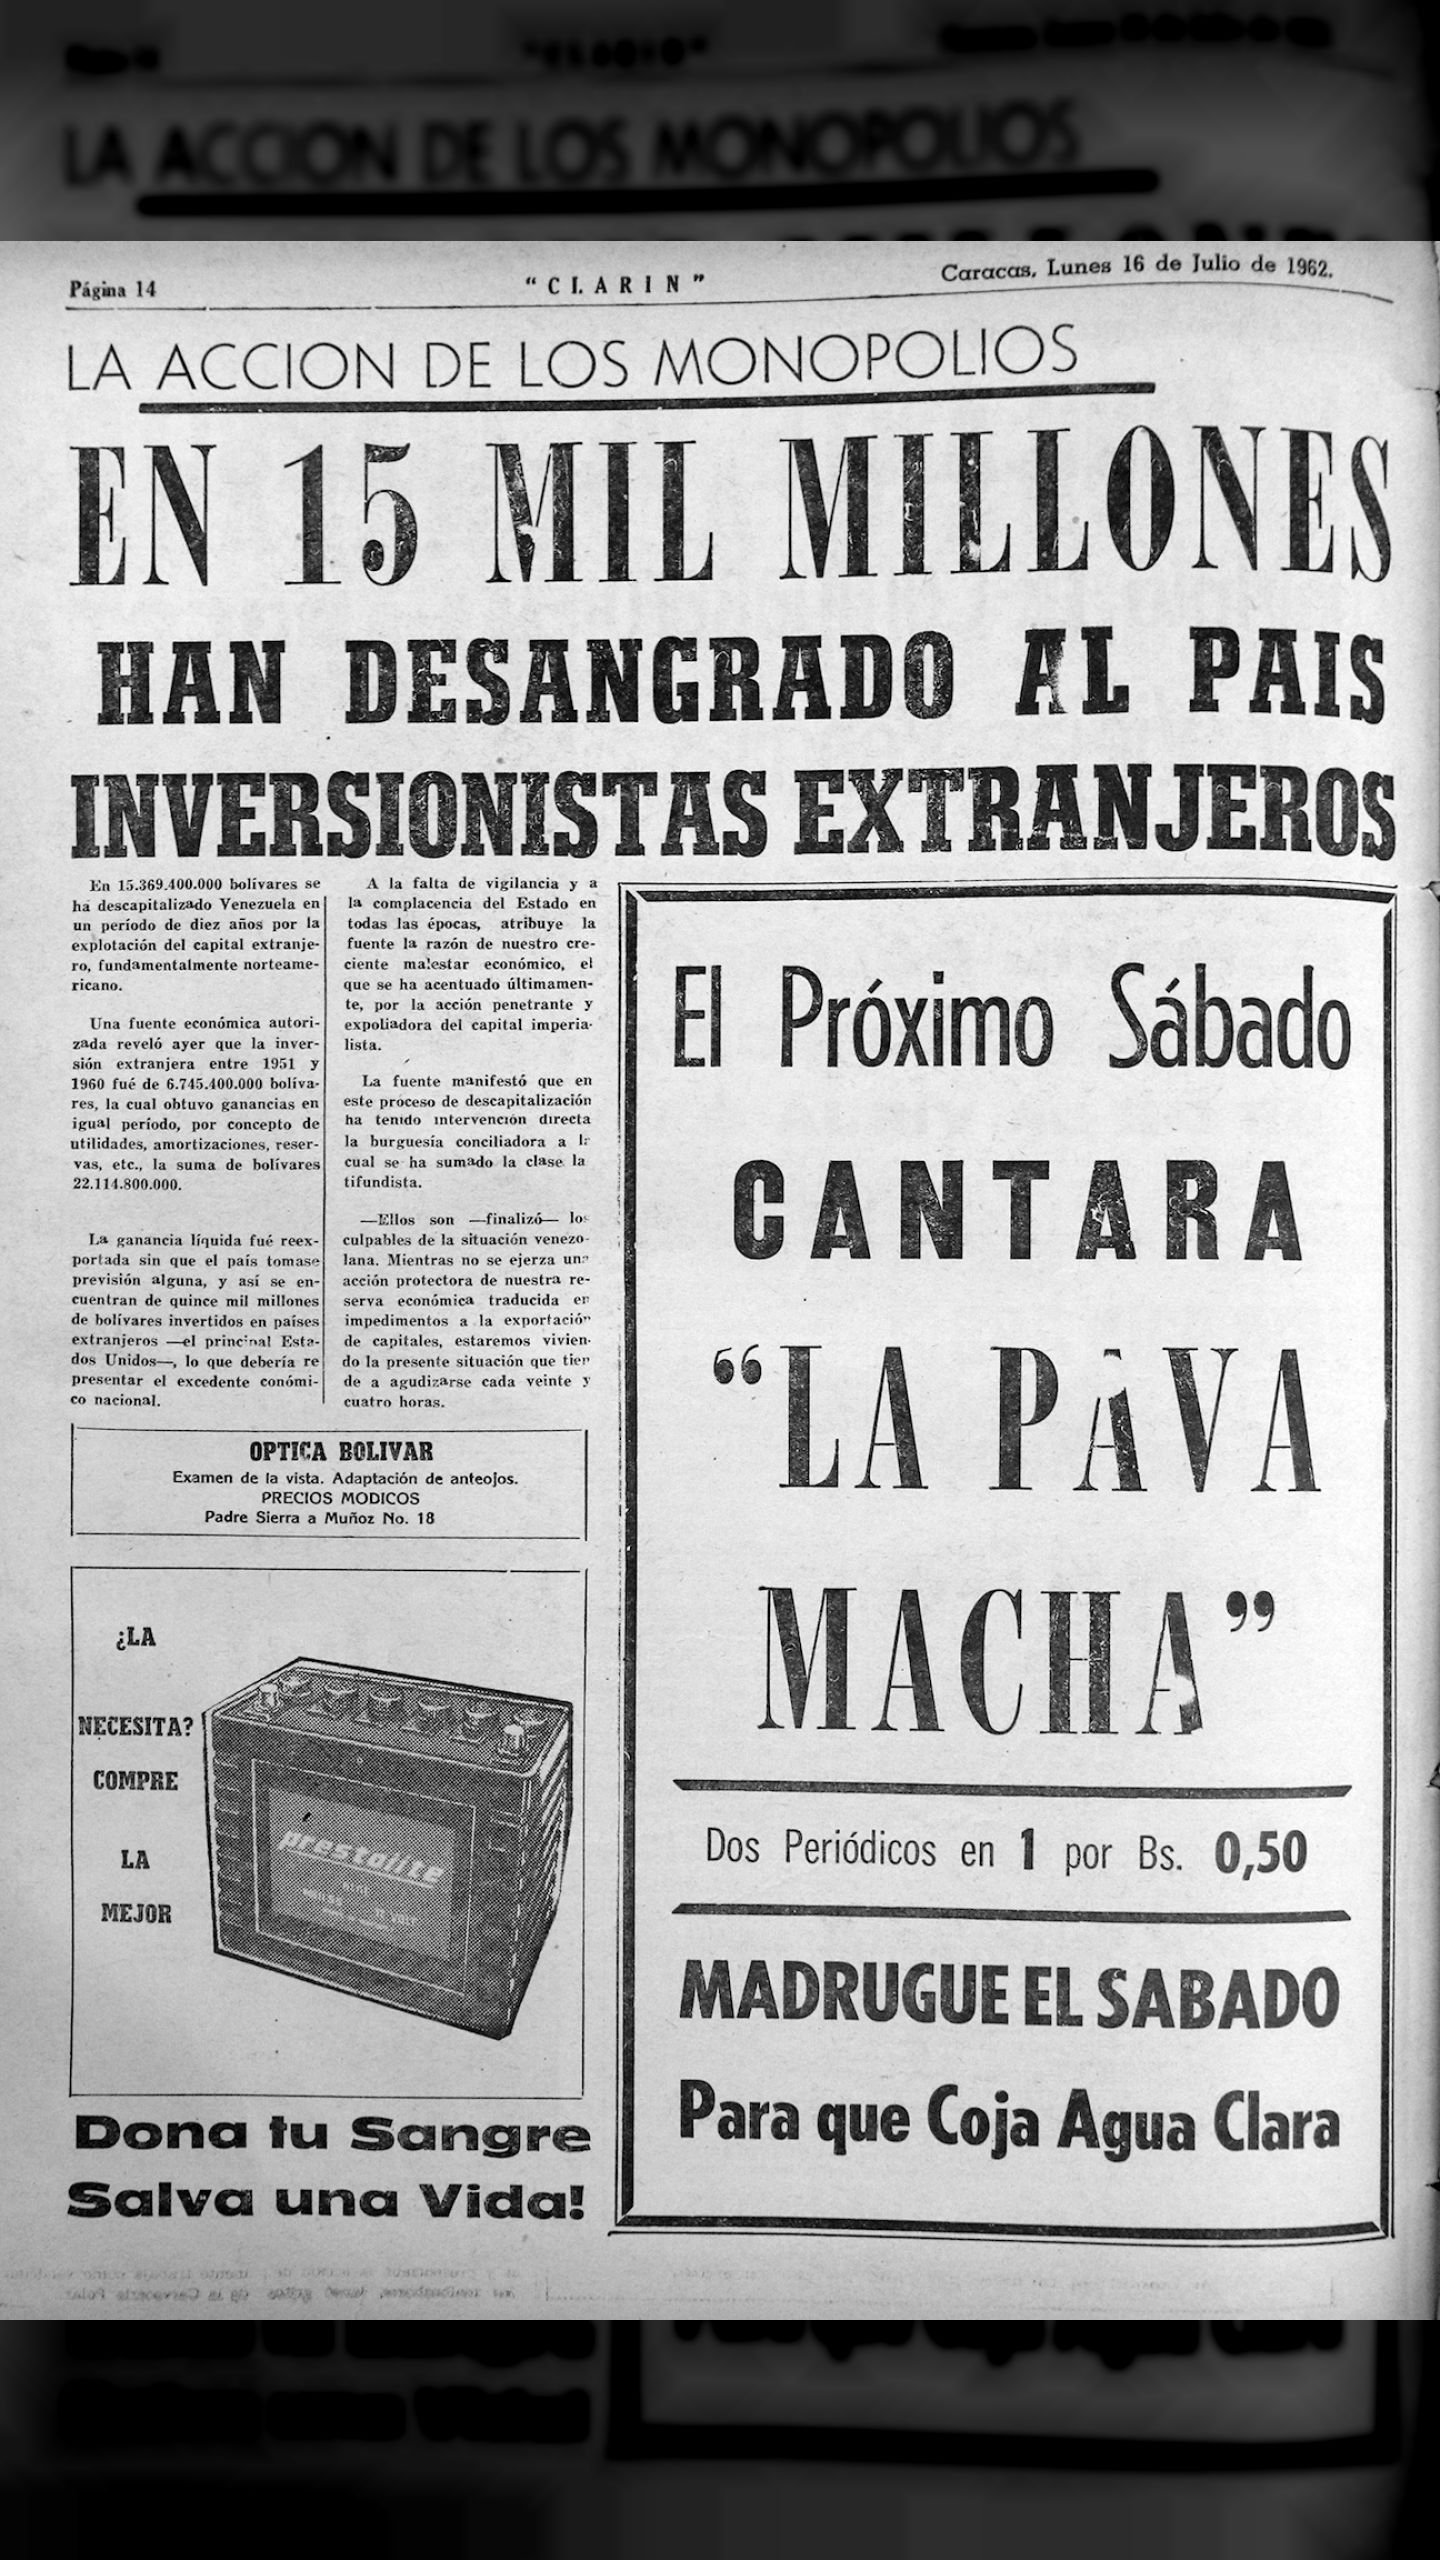 ¡Nos dejaron en la carraplana! 15 mil millones se han llevado del país los monopolistas extranjeros (Clarín, 16 de julio 1962)